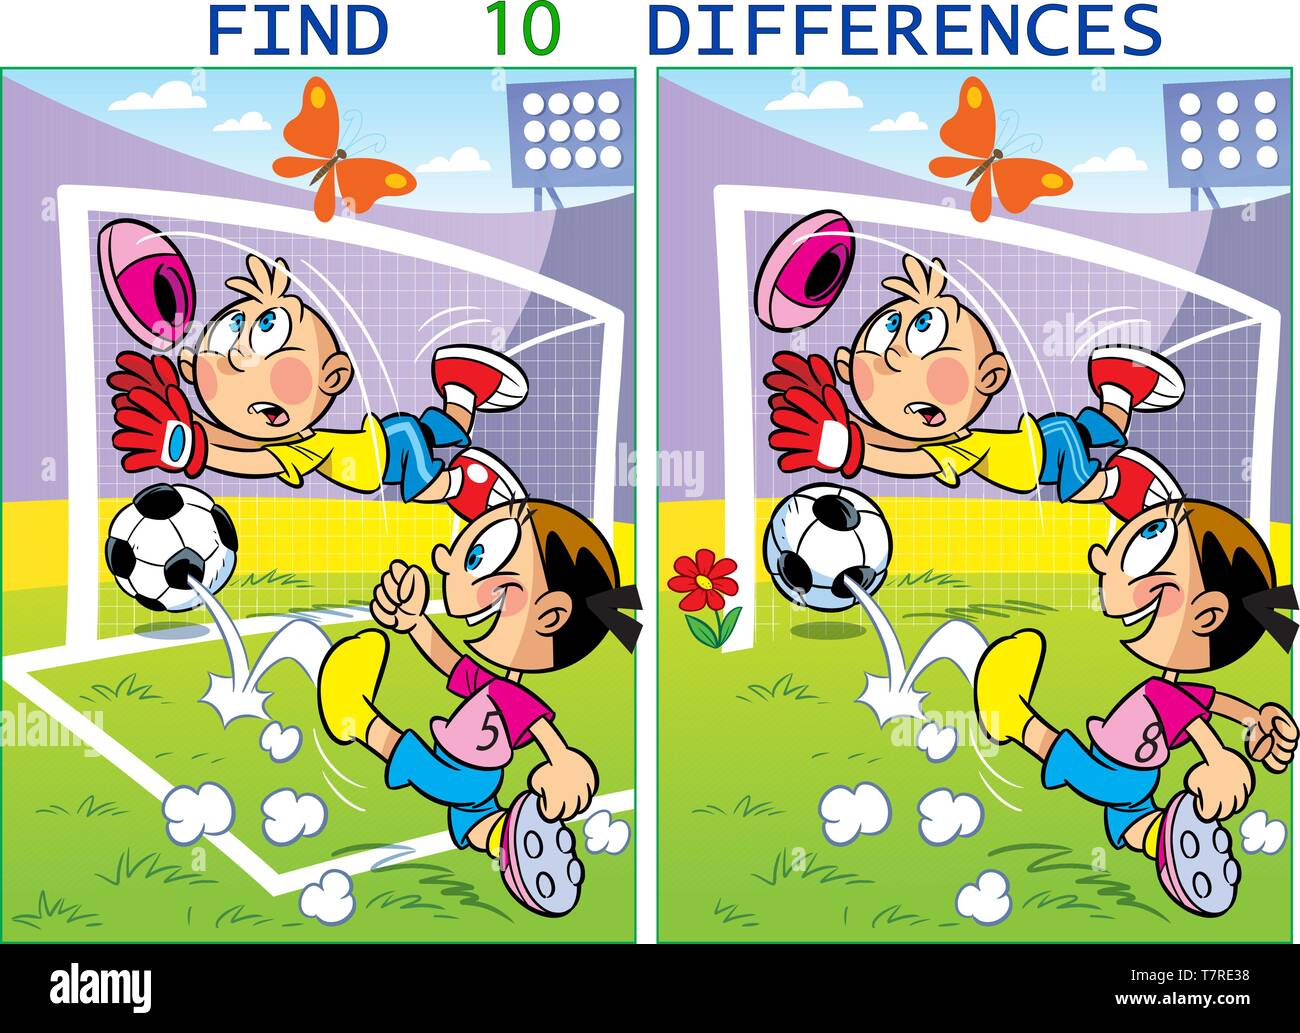 Auf Vektor illustration Kinder spielen Fußball. Puzzle 10 Unterschiede in den Bildern des Sports finden. Stock Vektor